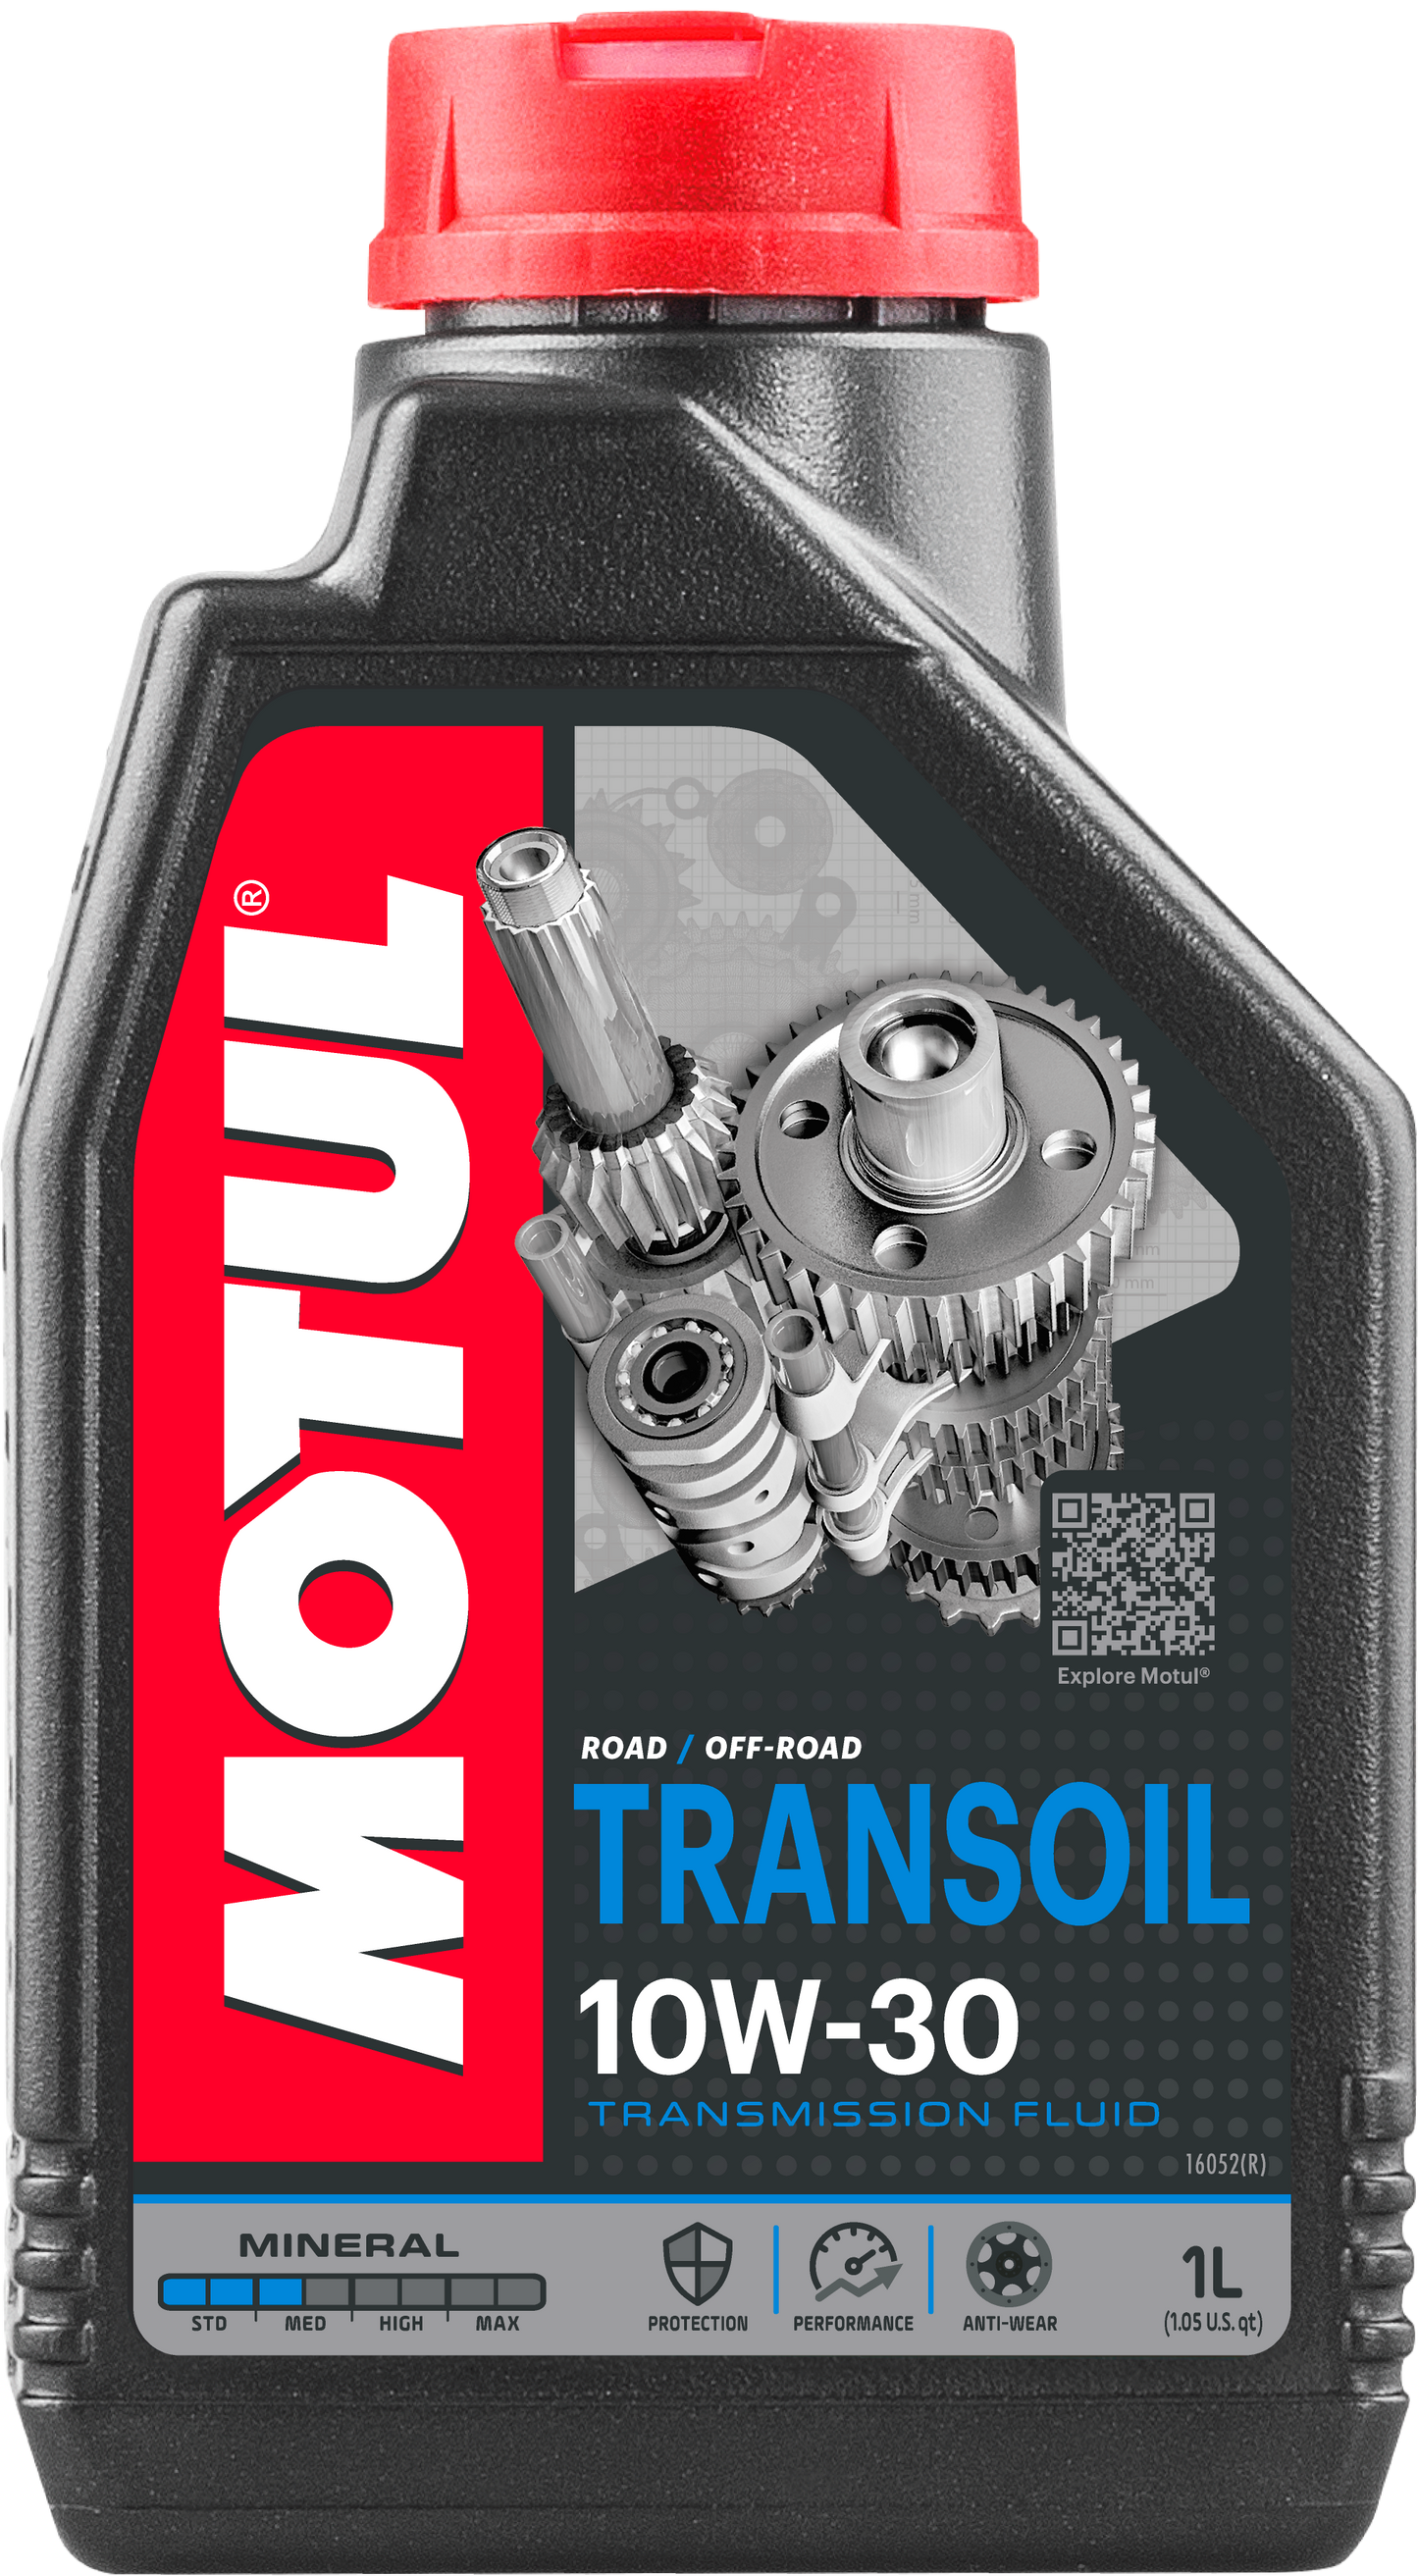 Motul Transoil 10W-30, 1 liter